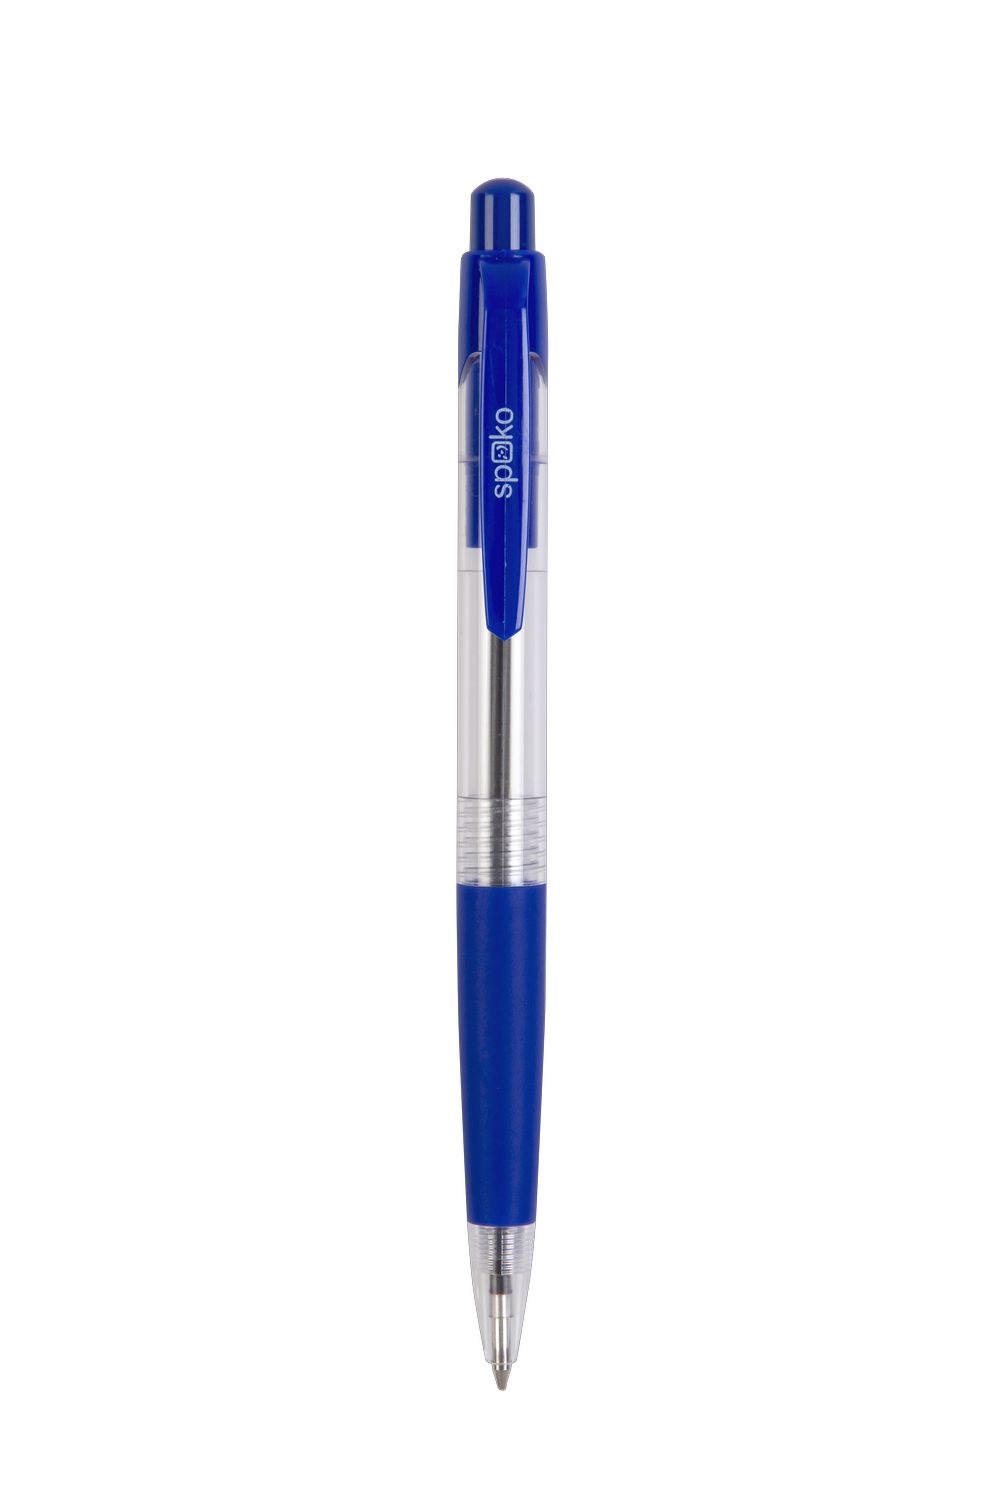 Pero kuličkové COLOMBO transparentní modré